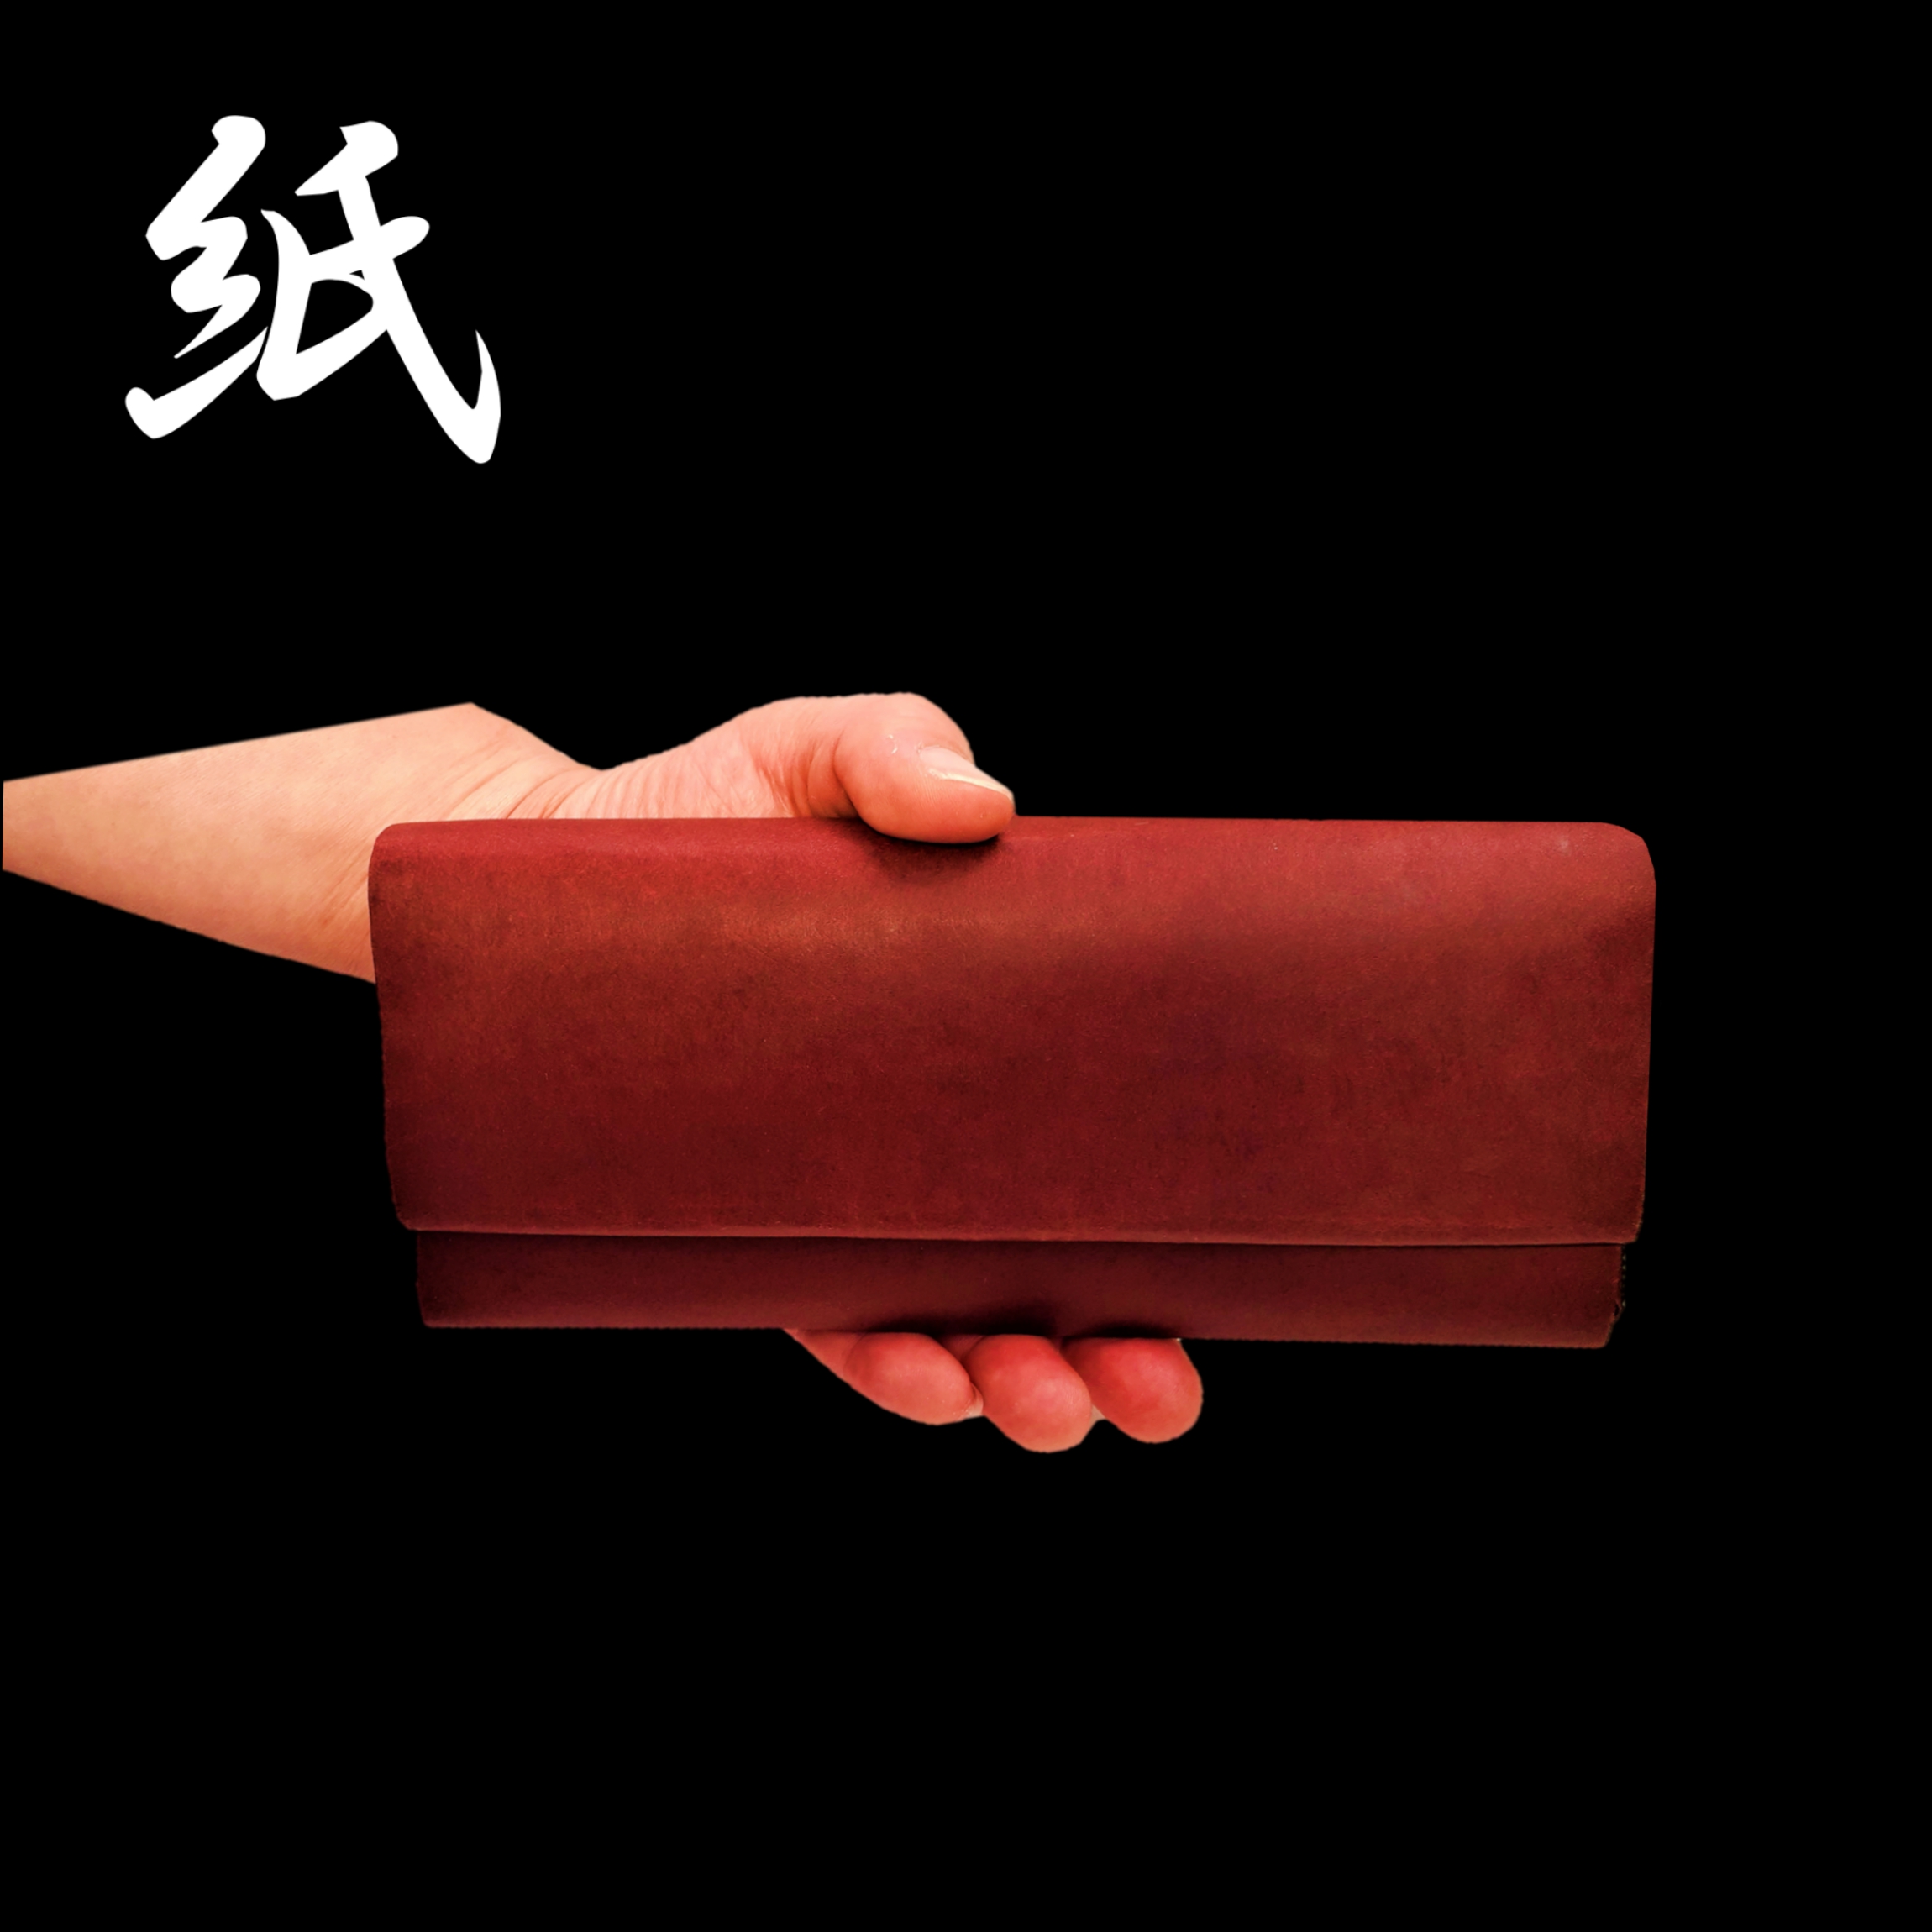 紙の長財布 コルドバ紙使用 Iichi ハンドメイド クラフト作品 手仕事品の通販